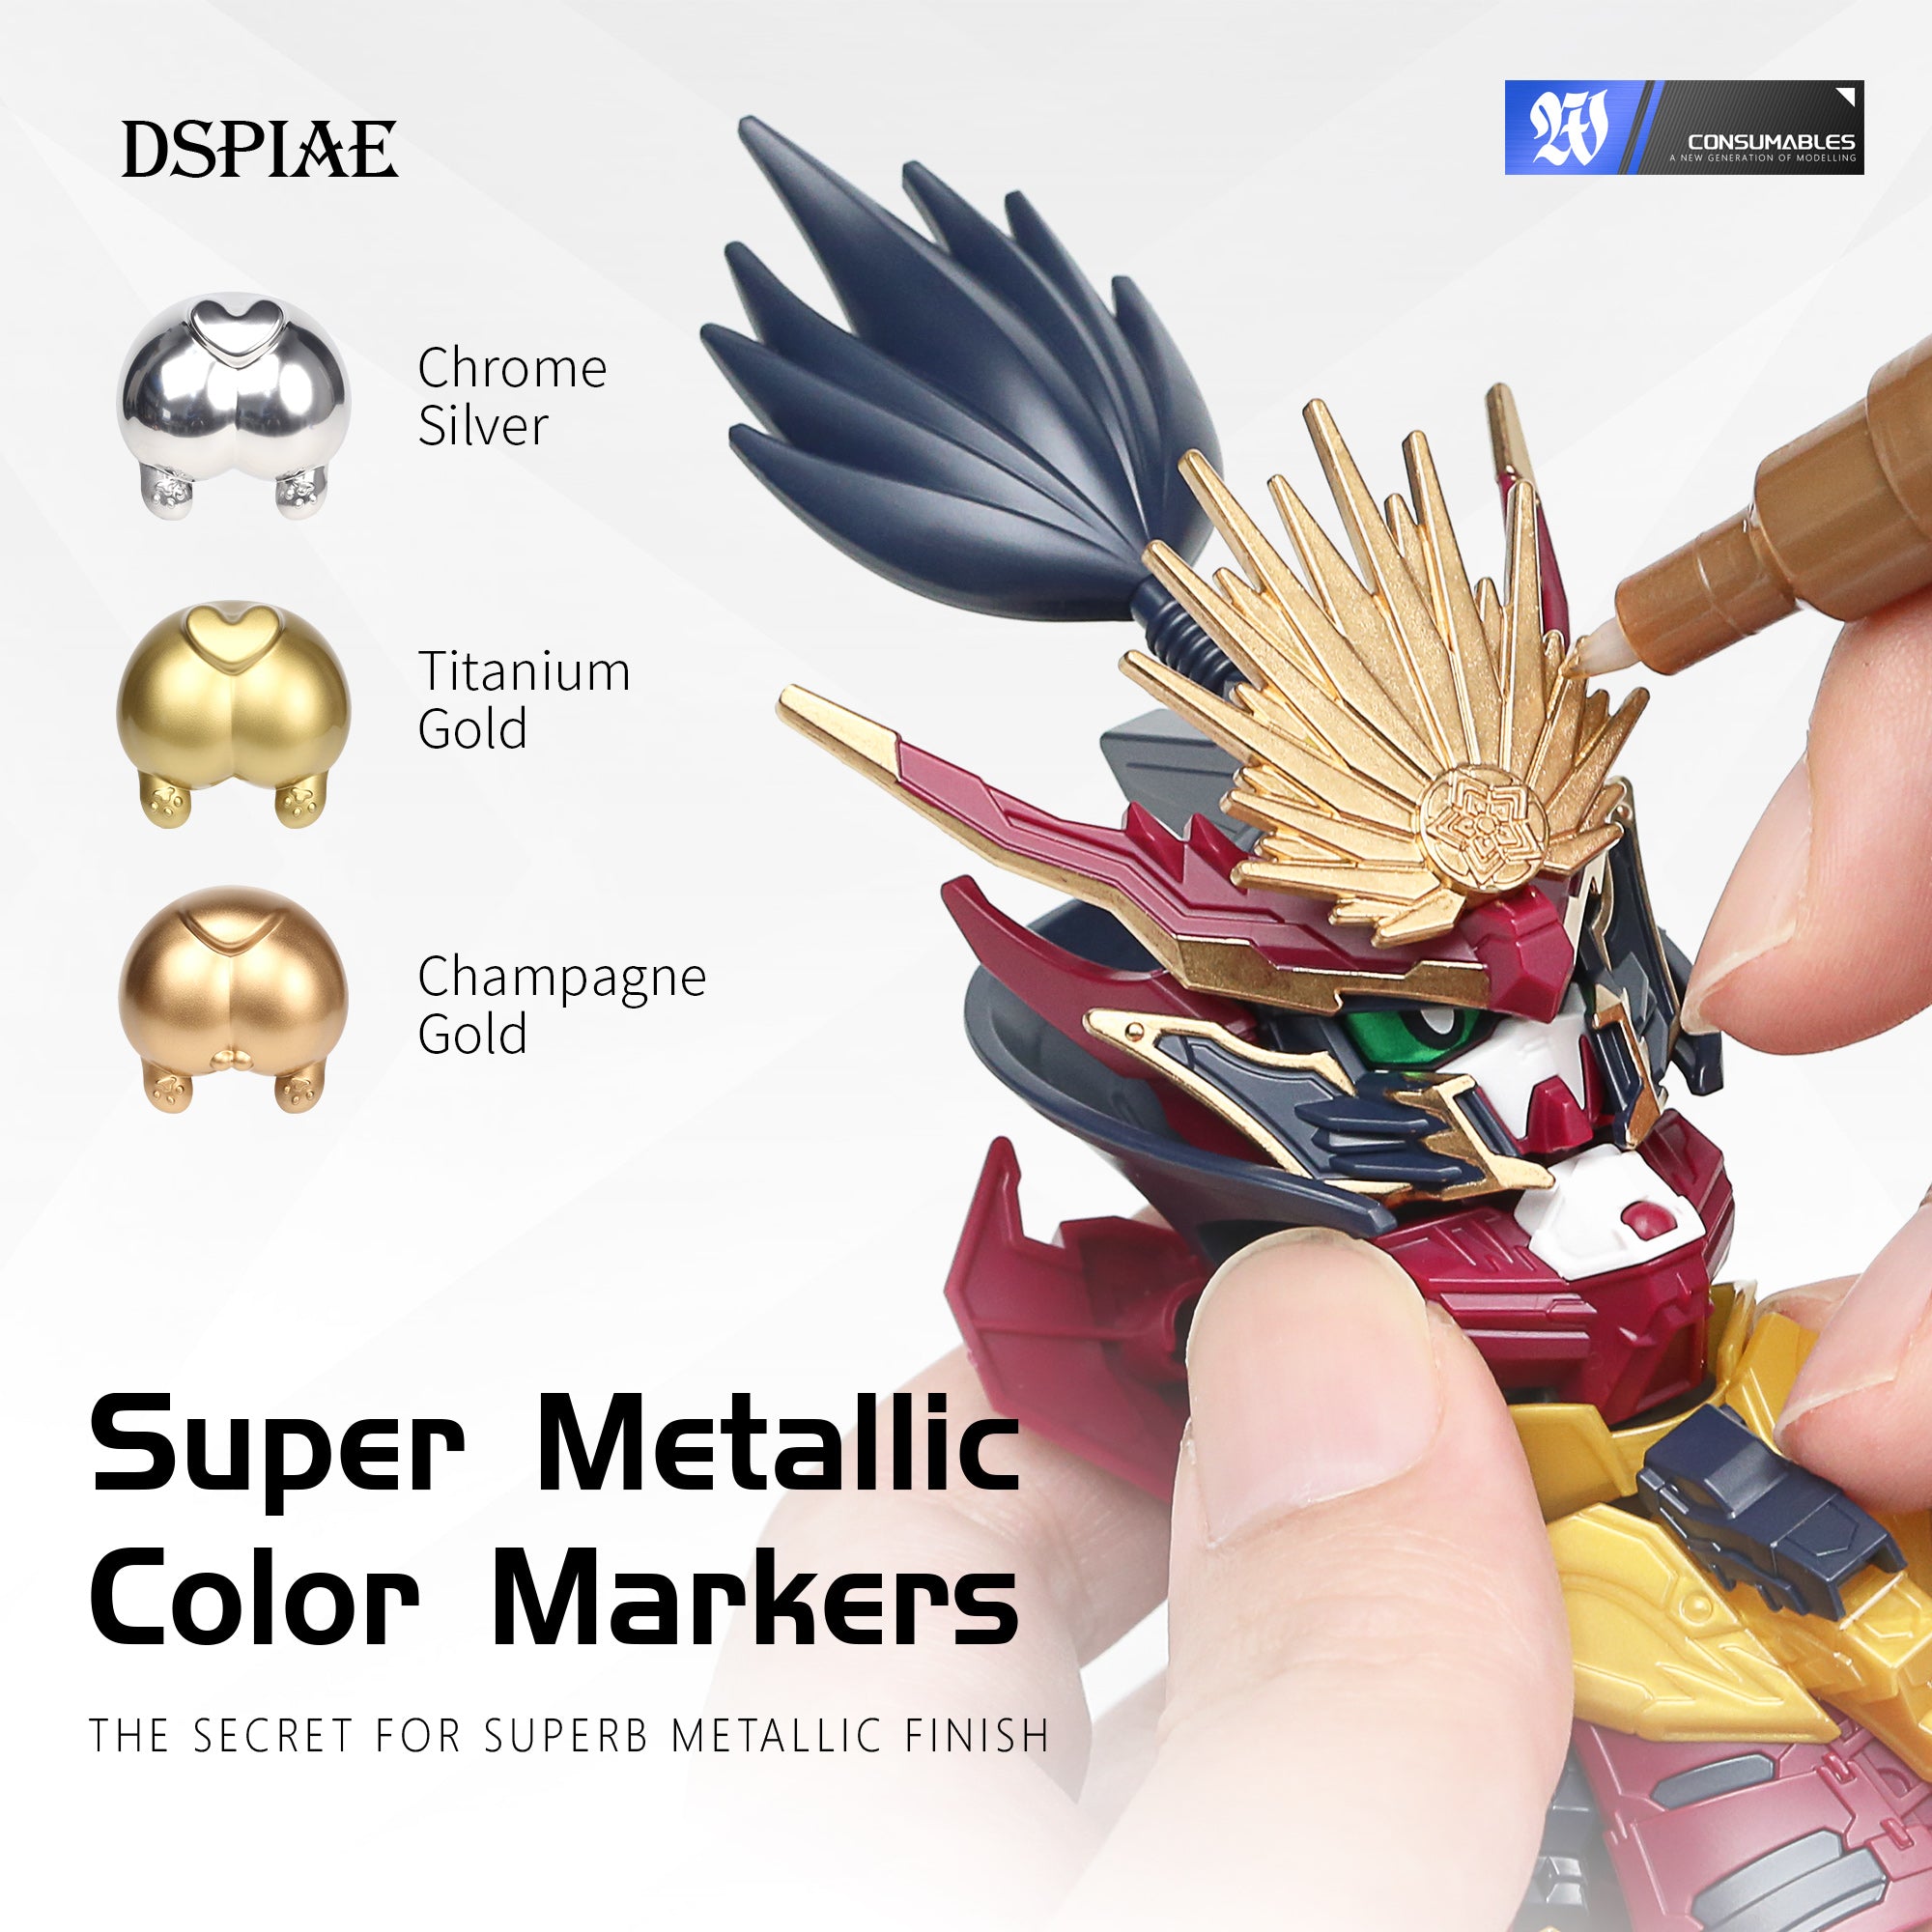 DSPIAE MKS Super Metallic Colors